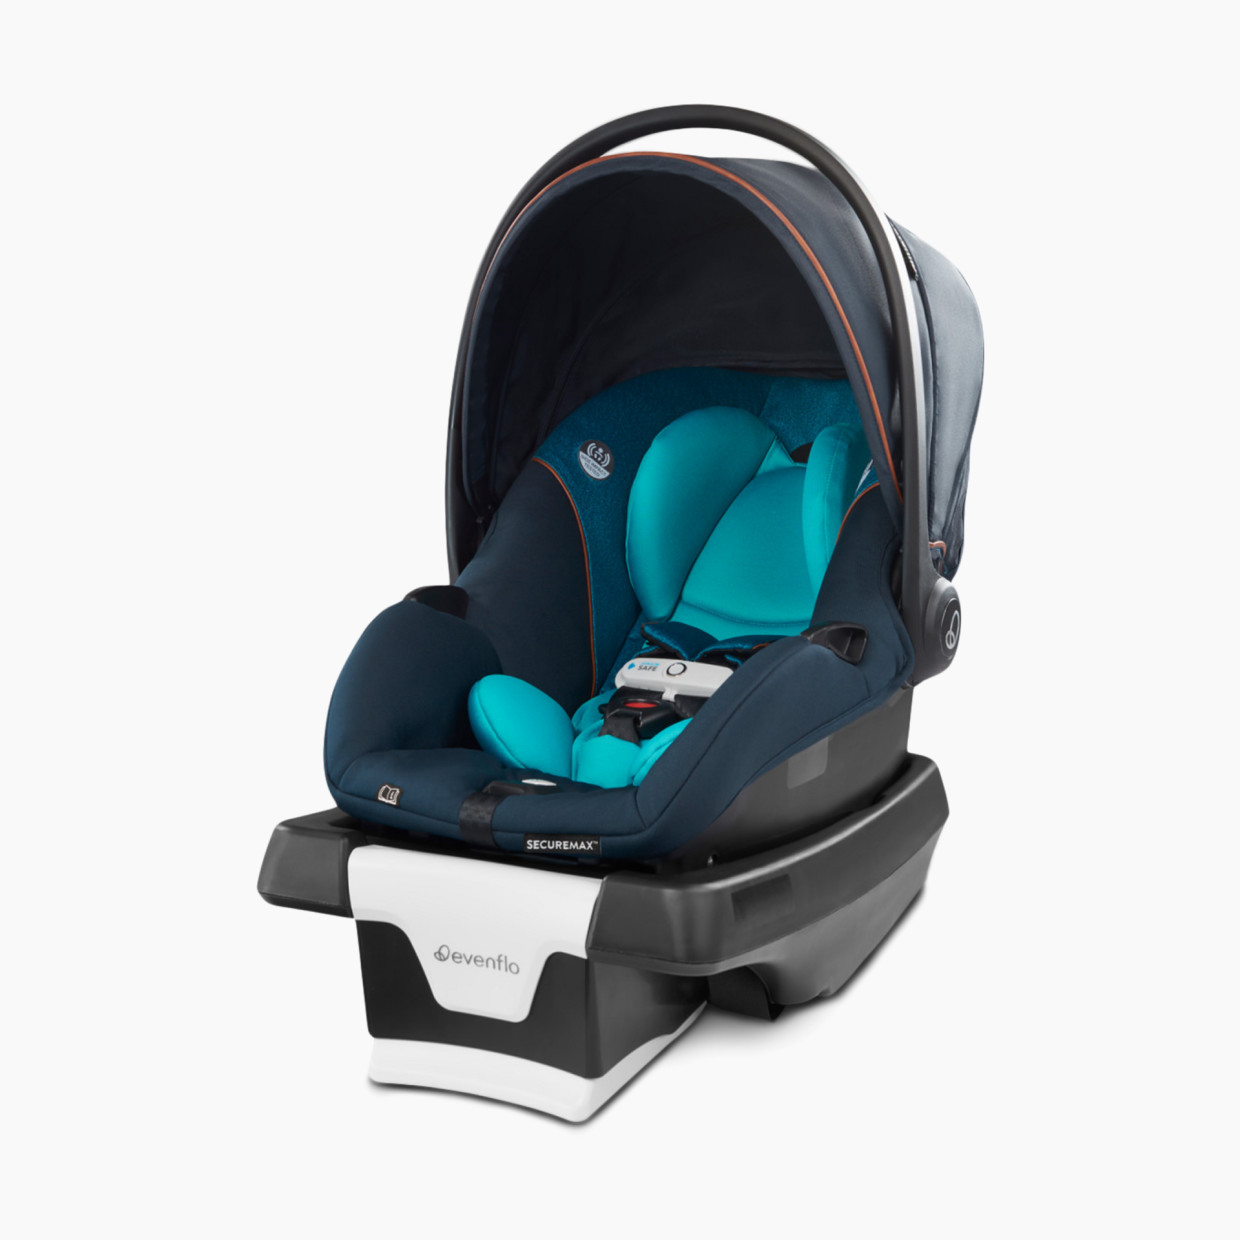 Evenflo Gold SecureMax Smart Infant Car Seat - Sapphire Blue.